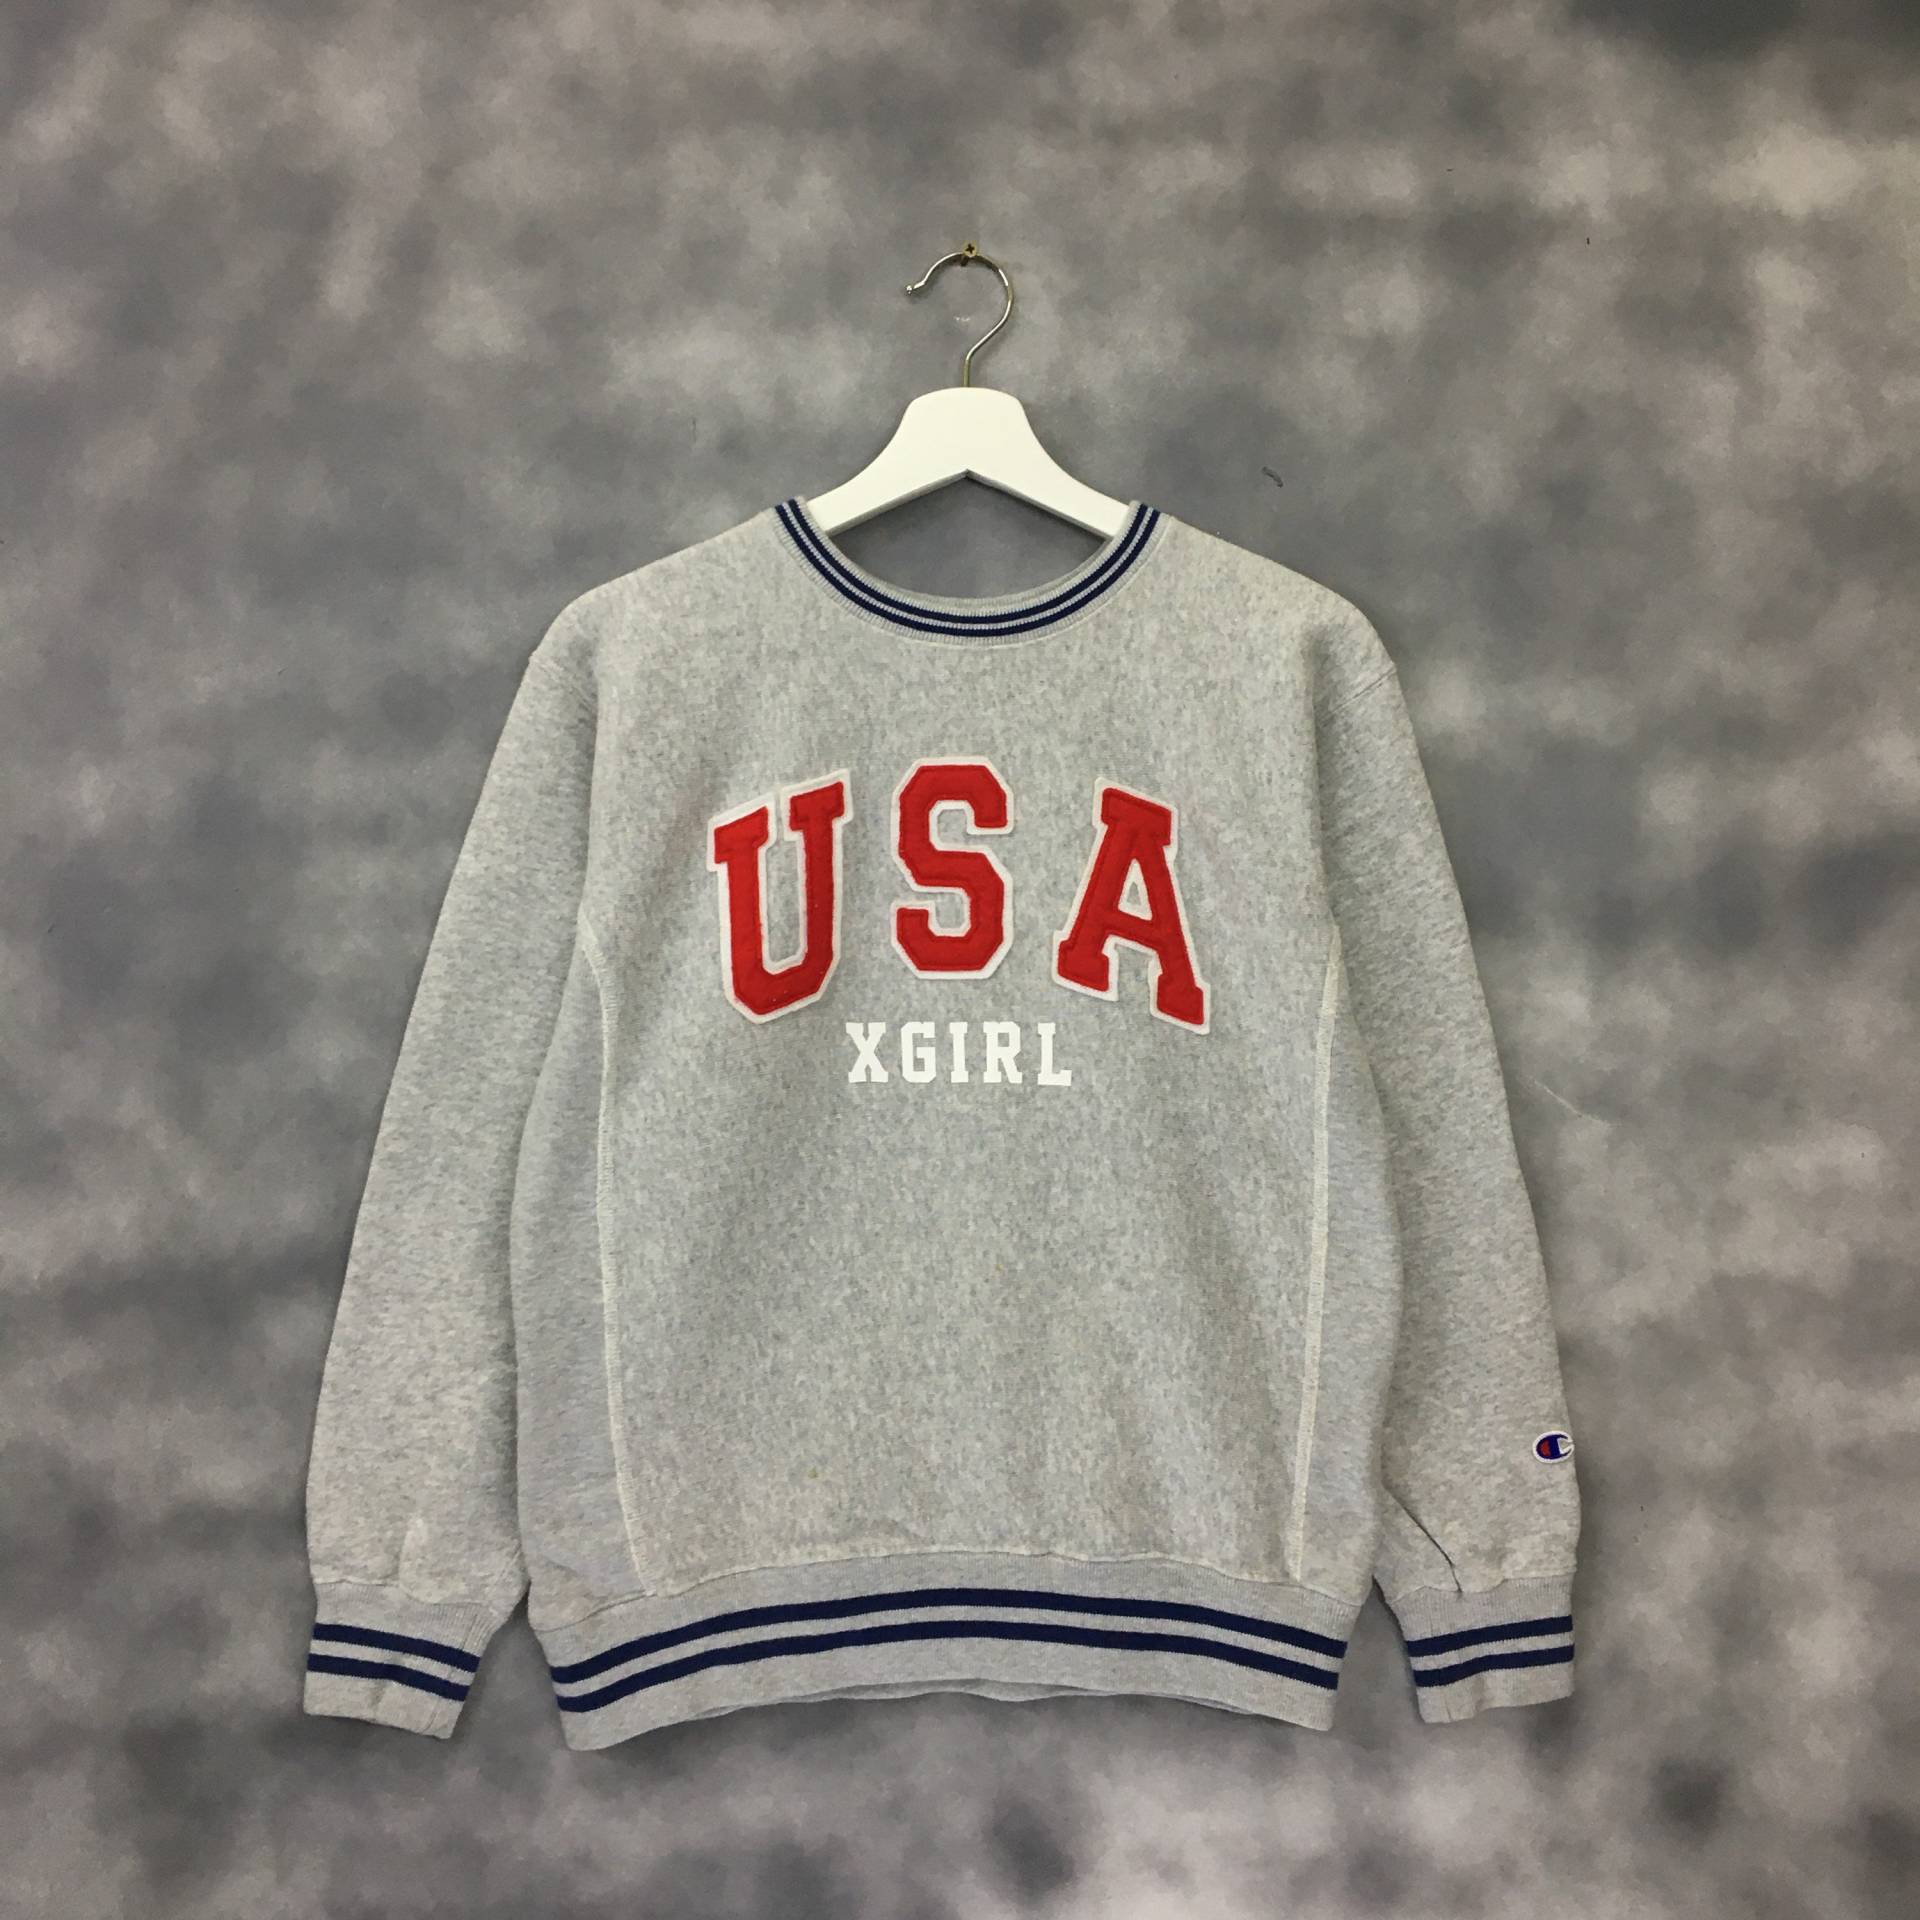 Vintage Champion Usa Spellout Collab X Girl Reverse Weben Crewneck Sweatshirts Pullover von ThriftmarkShop